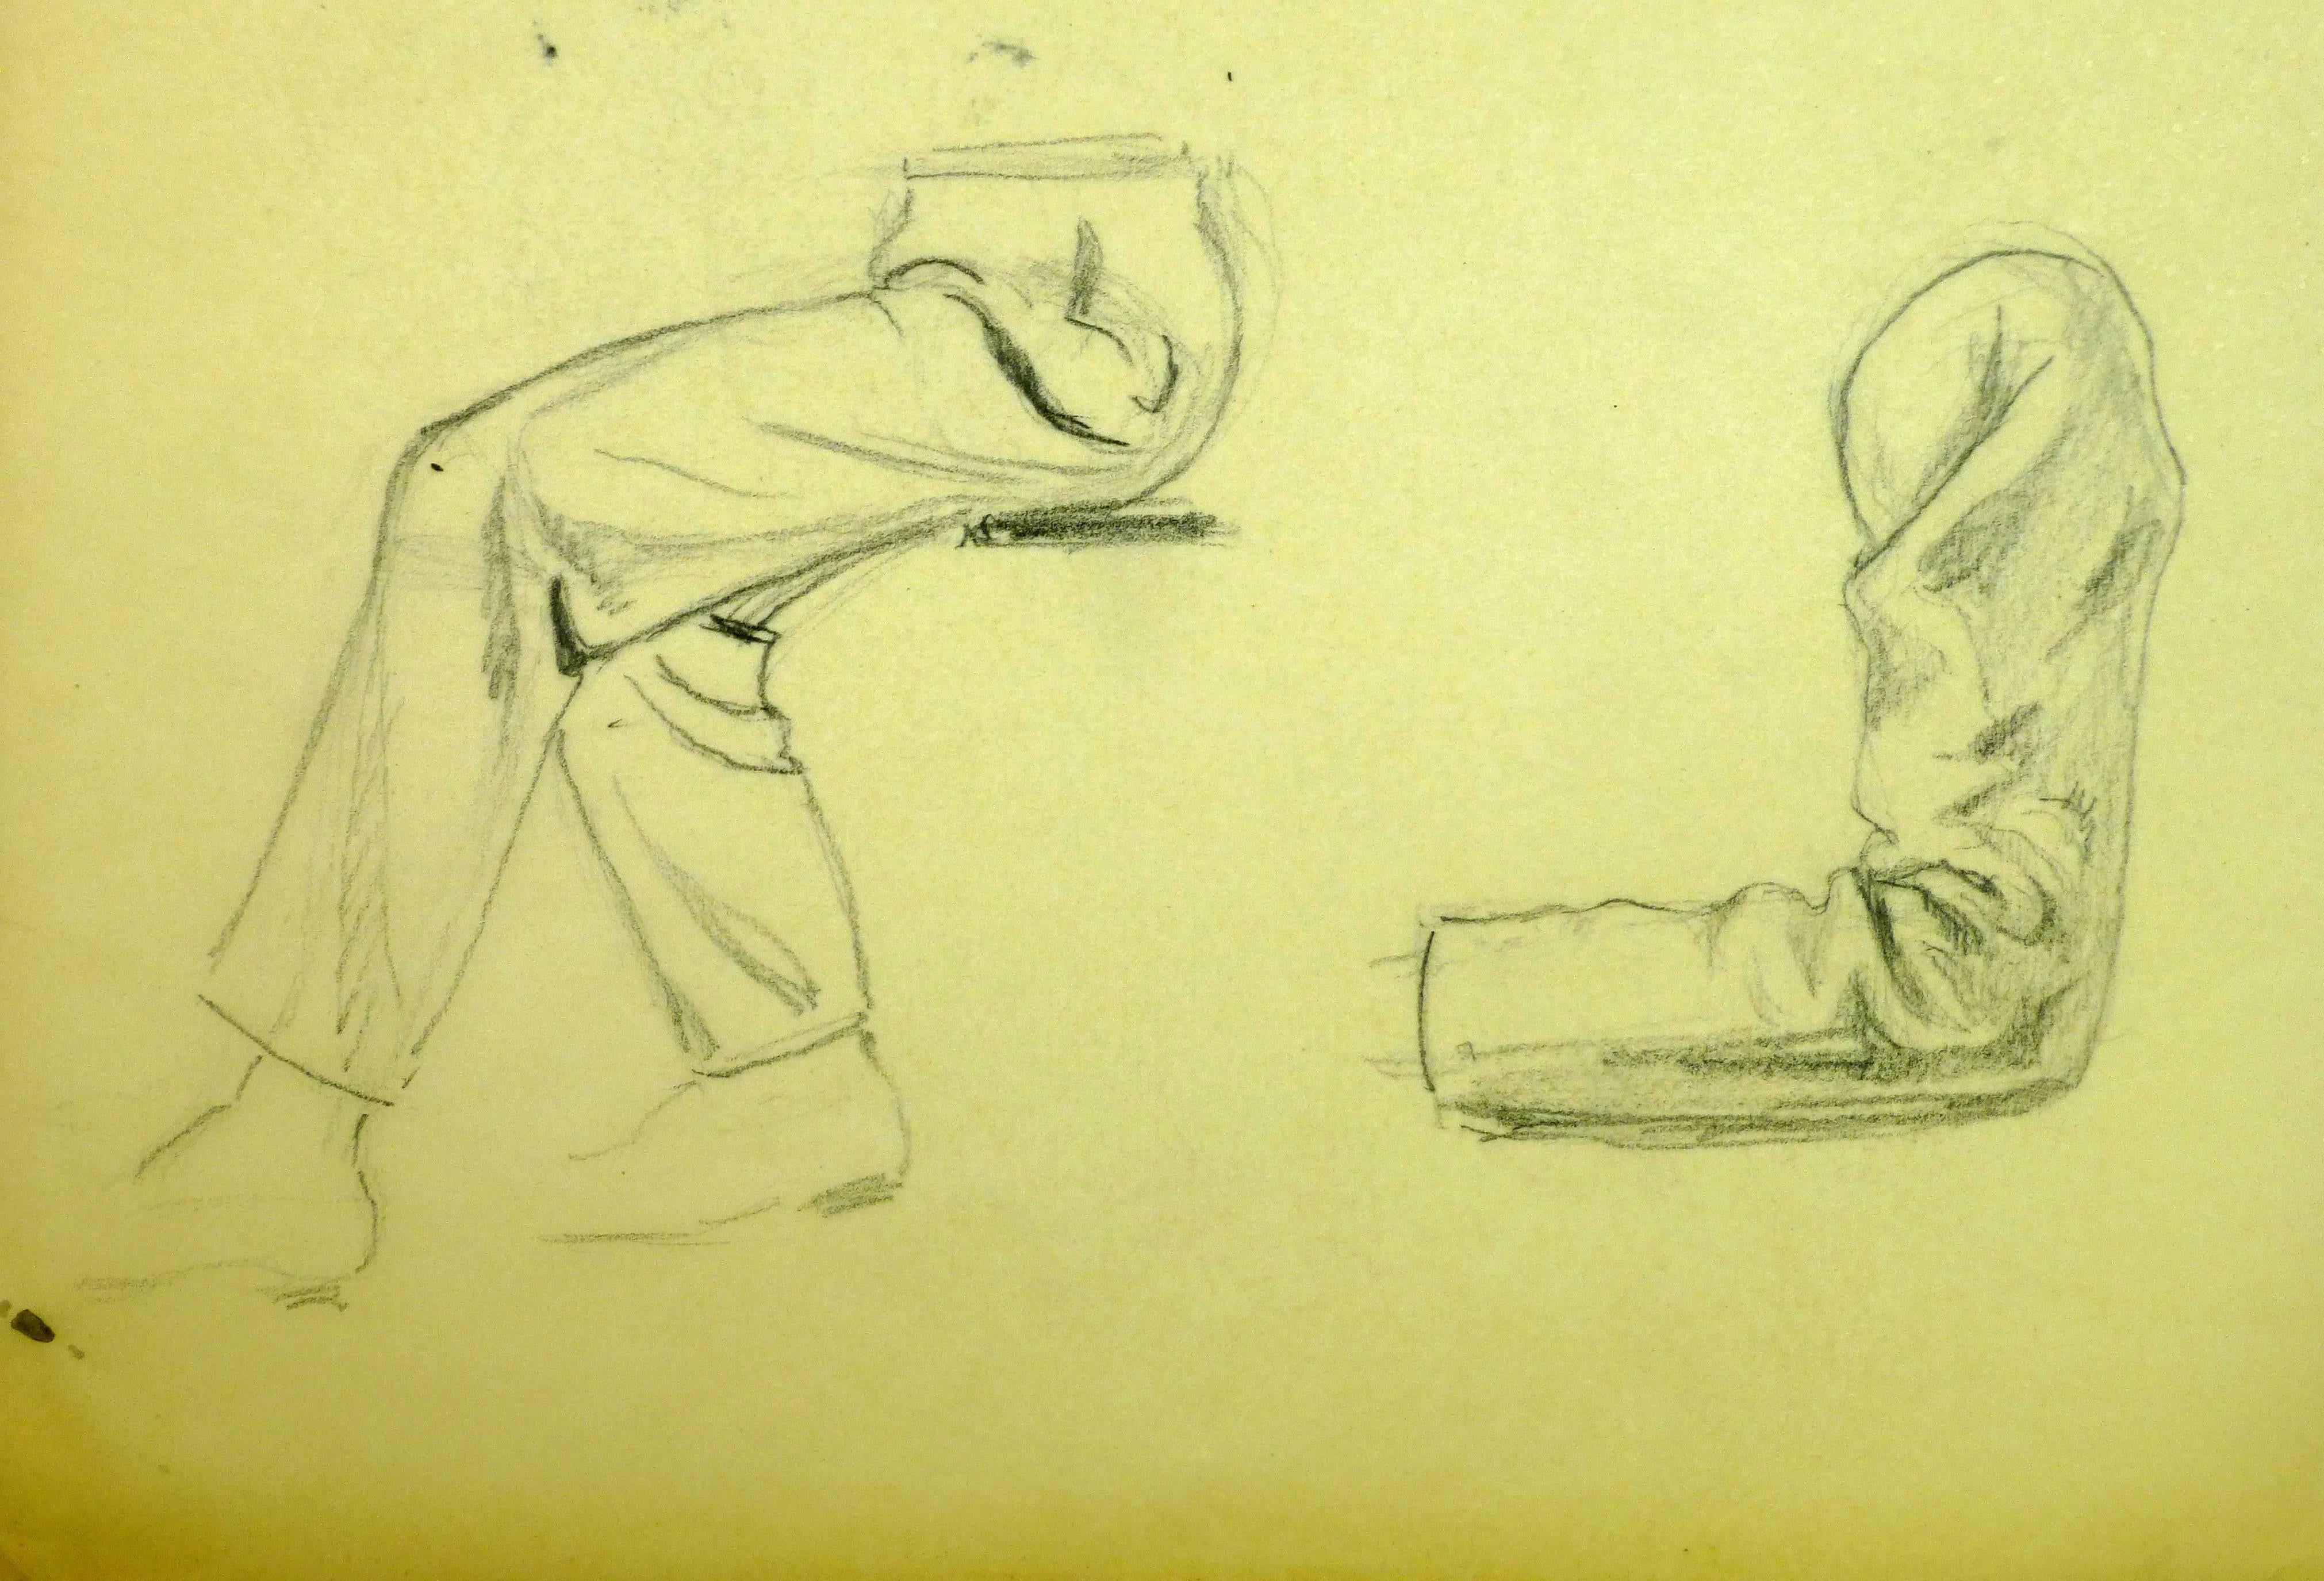 Pencil Sketch of Men's Legs - Art by Werner Bell